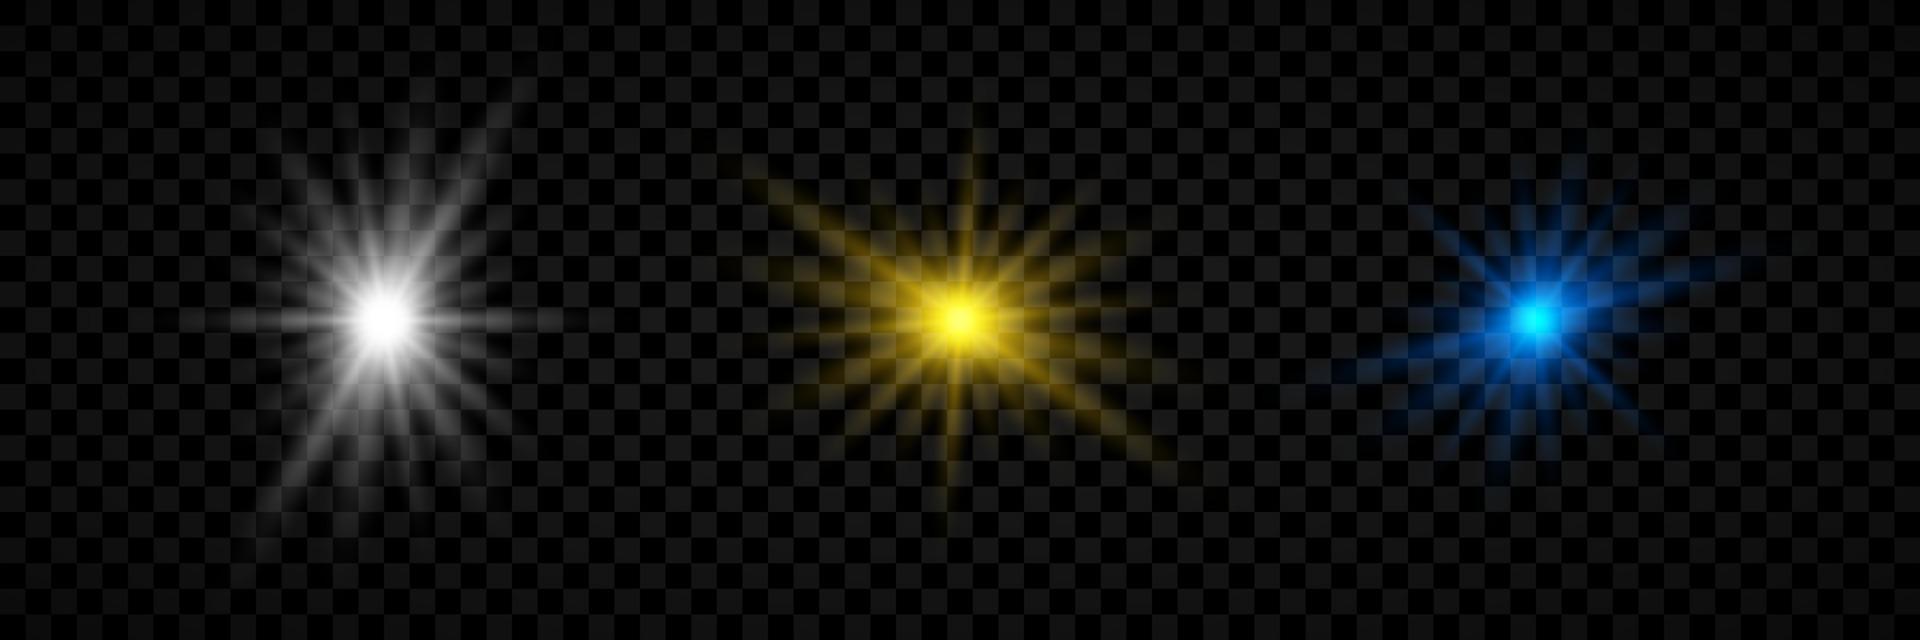 ljus effekt av lins bloss. uppsättning av tre vit, gul och blå lysande lampor starburst effekter med pärlar på en transparent bakgrund. vektor illustration